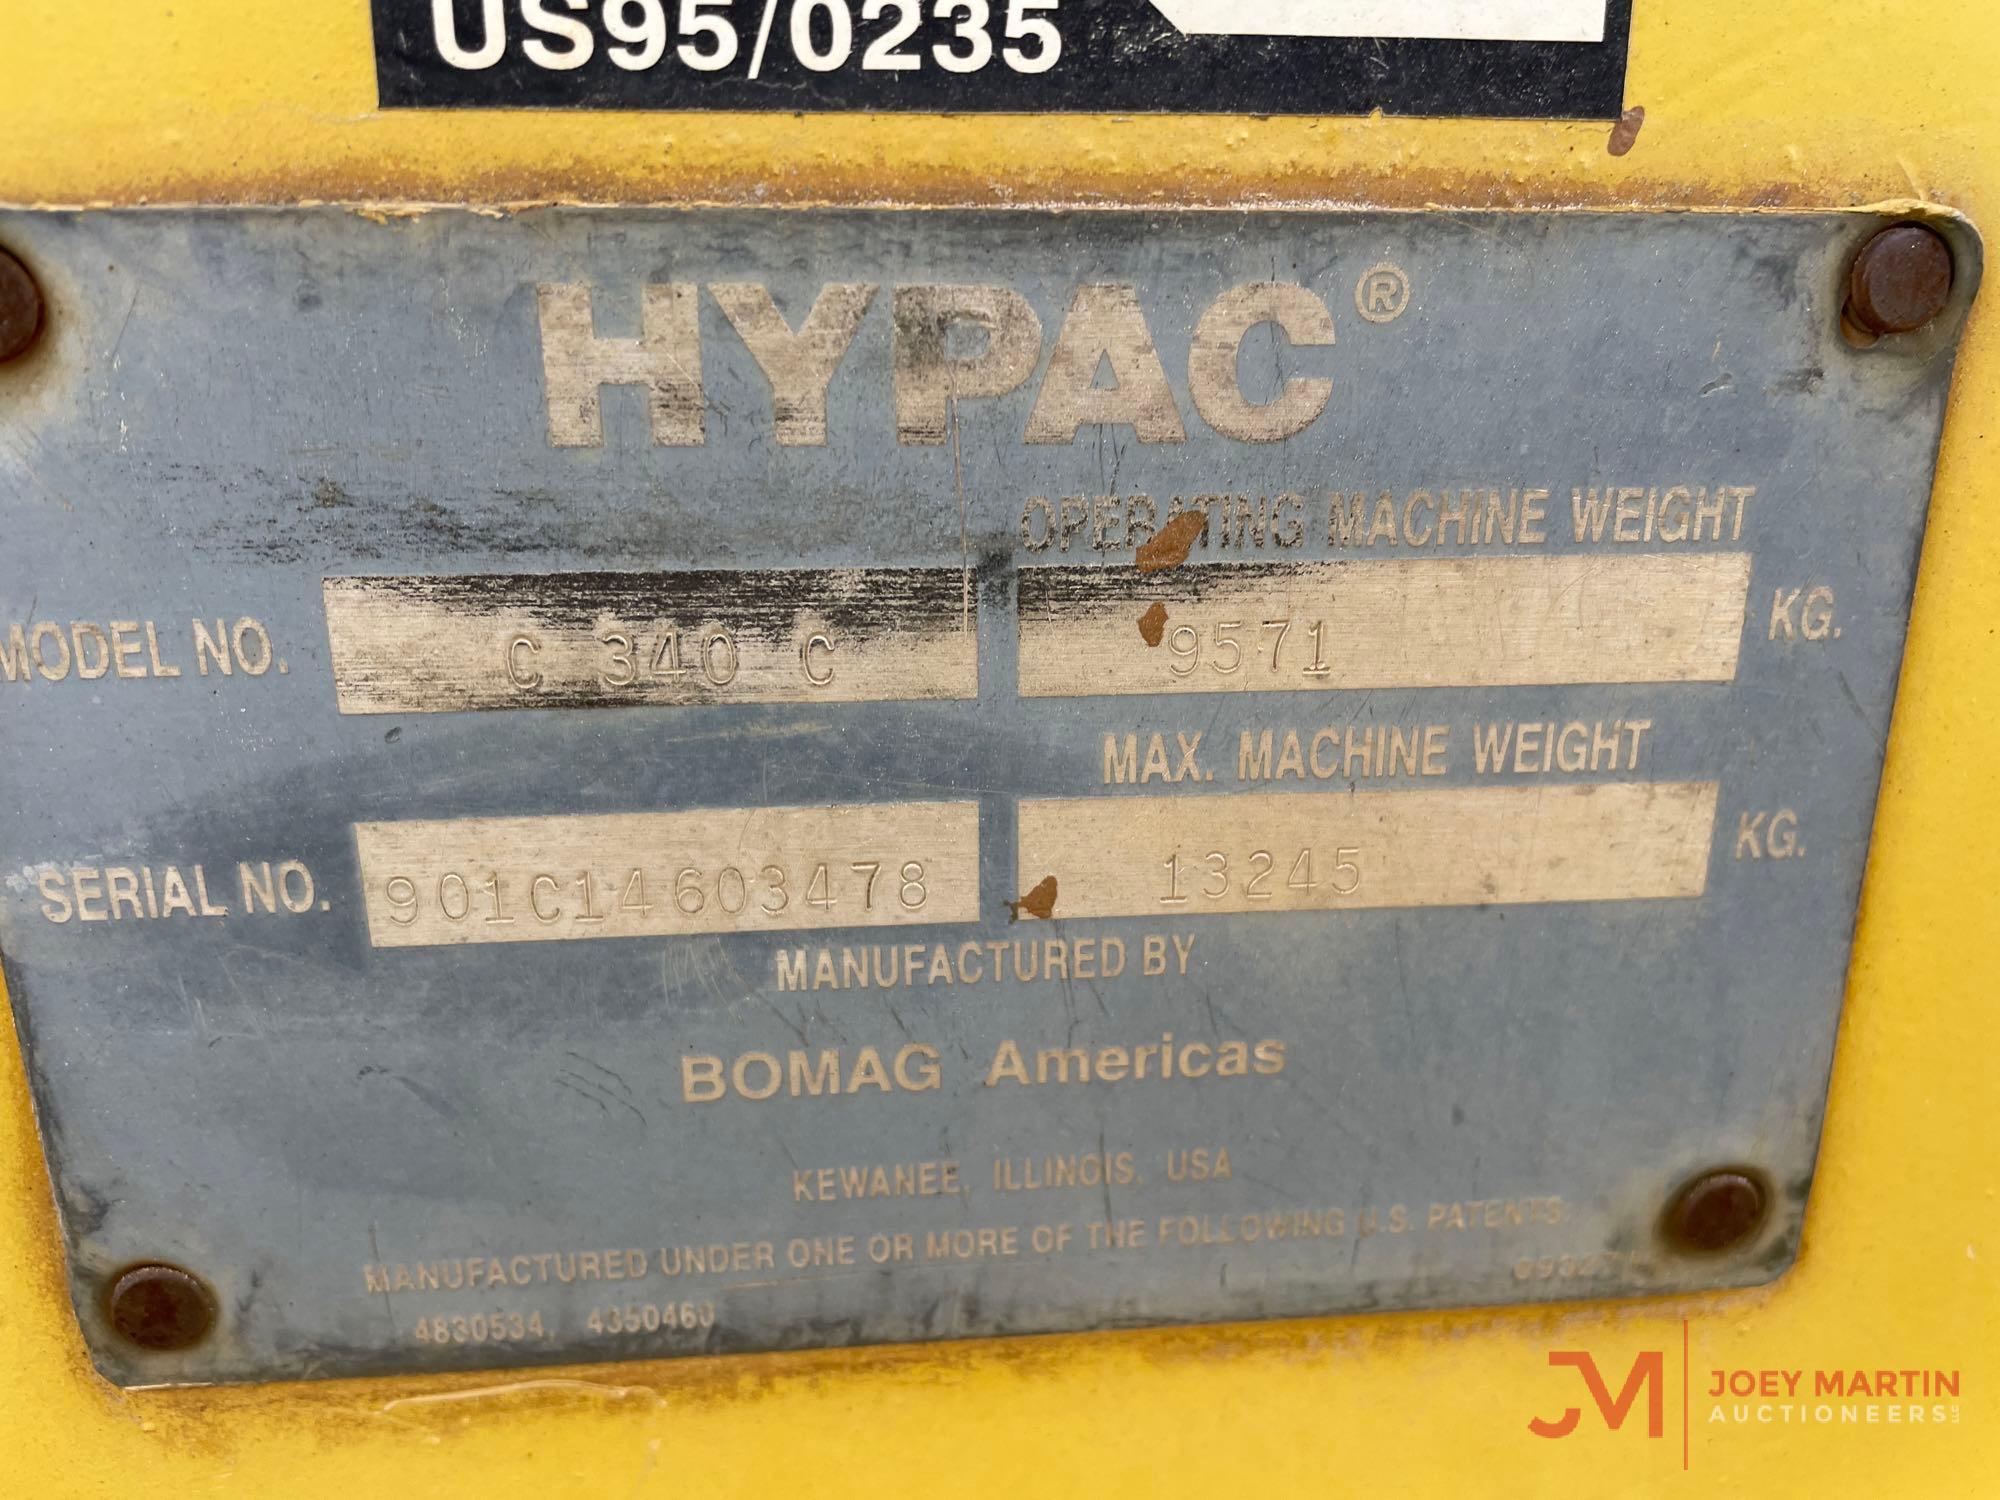 HYPAC C340C DRUM ROLLER